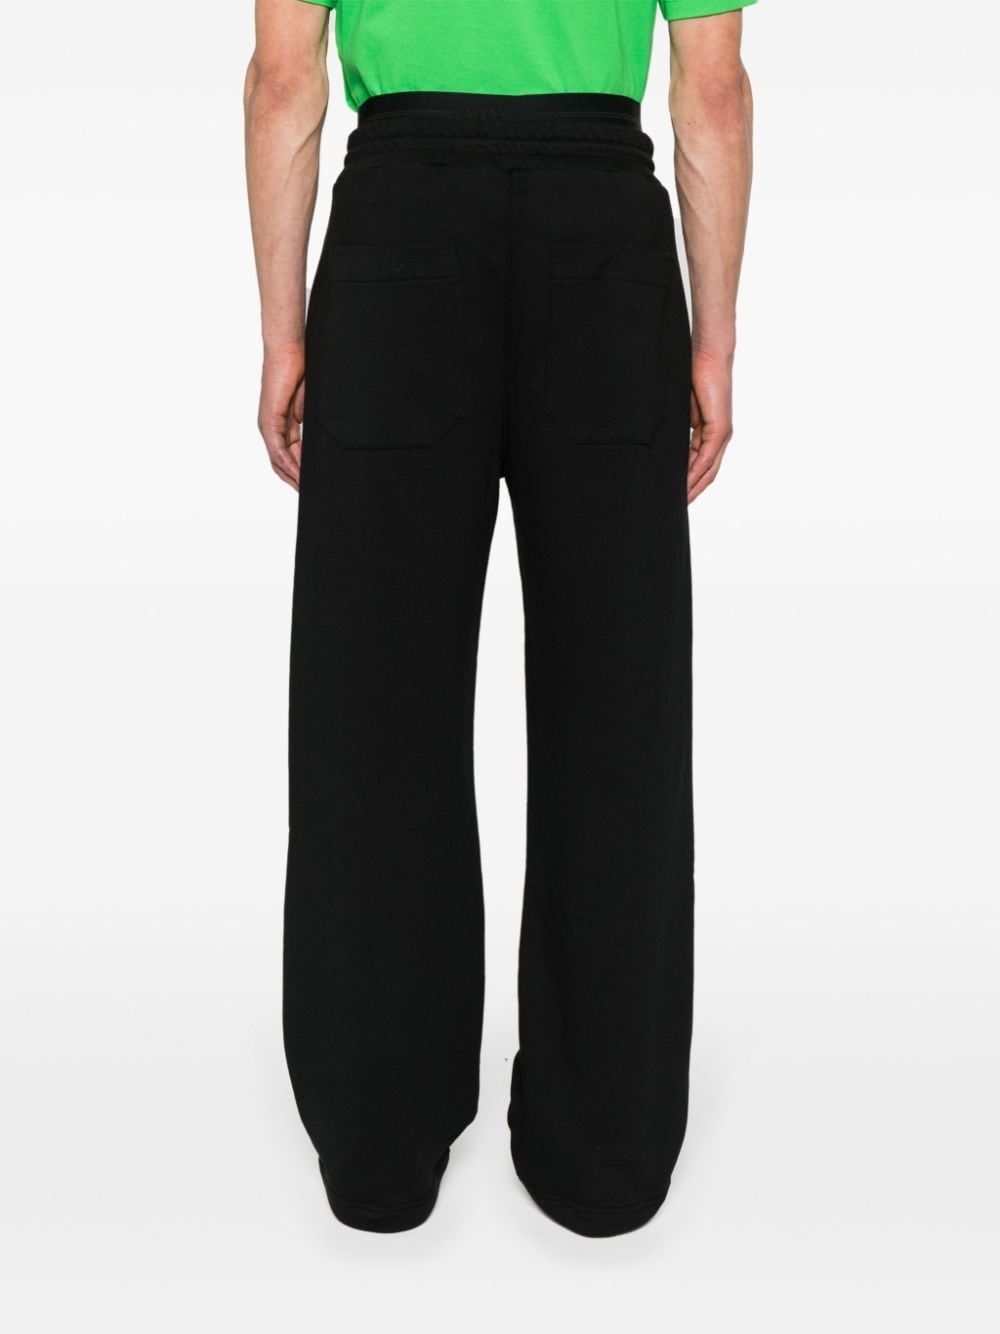 double-waist cotton track pants - 4